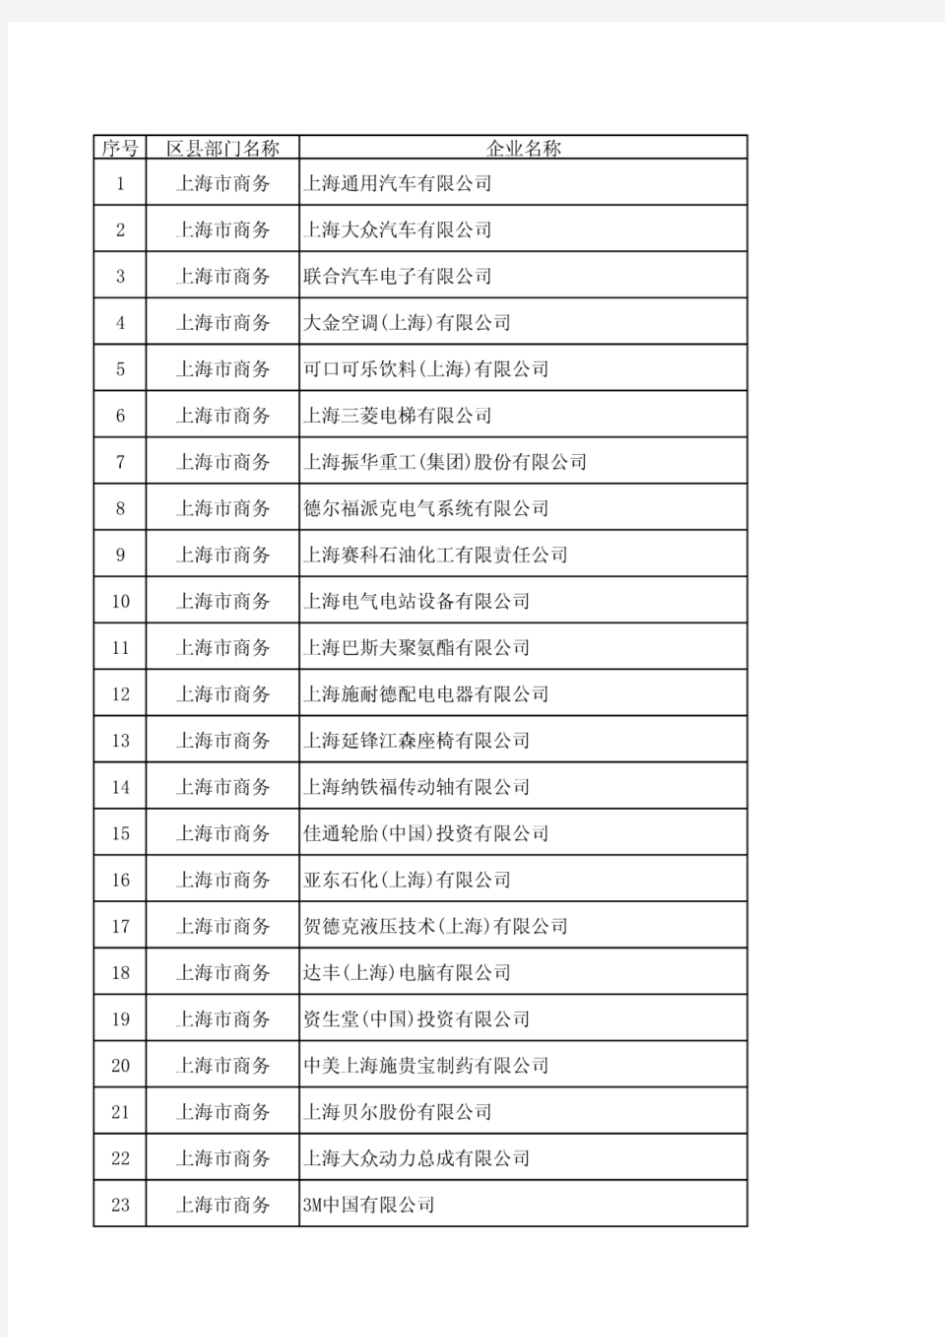 上海市外资企业名单